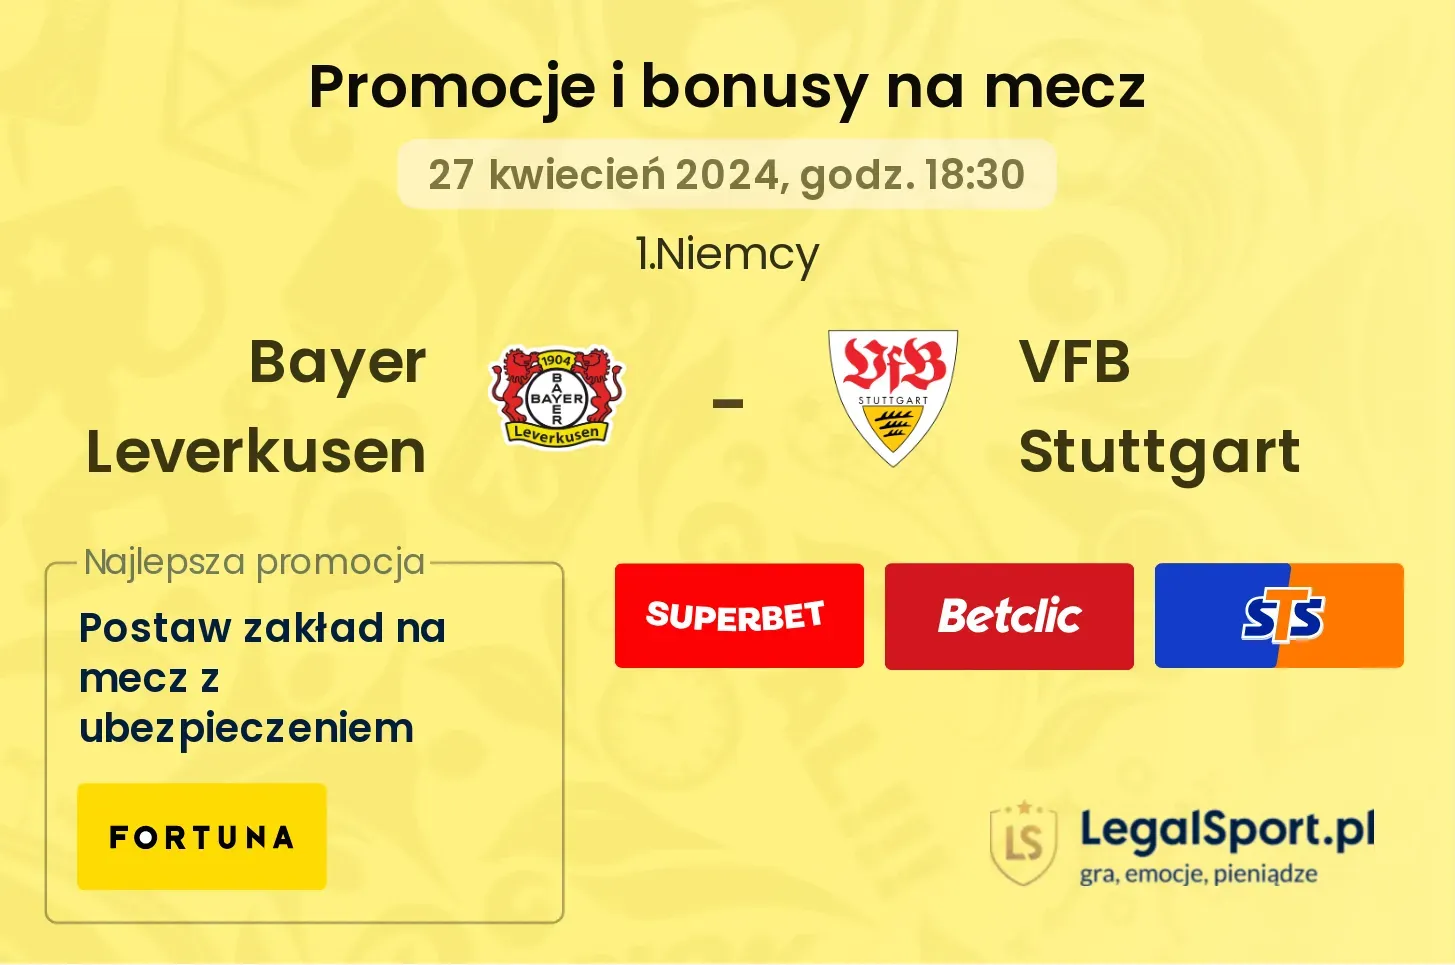 Bayer Leverkusen - VFB Stuttgart promocje i bonusy (27.04, 18:30)